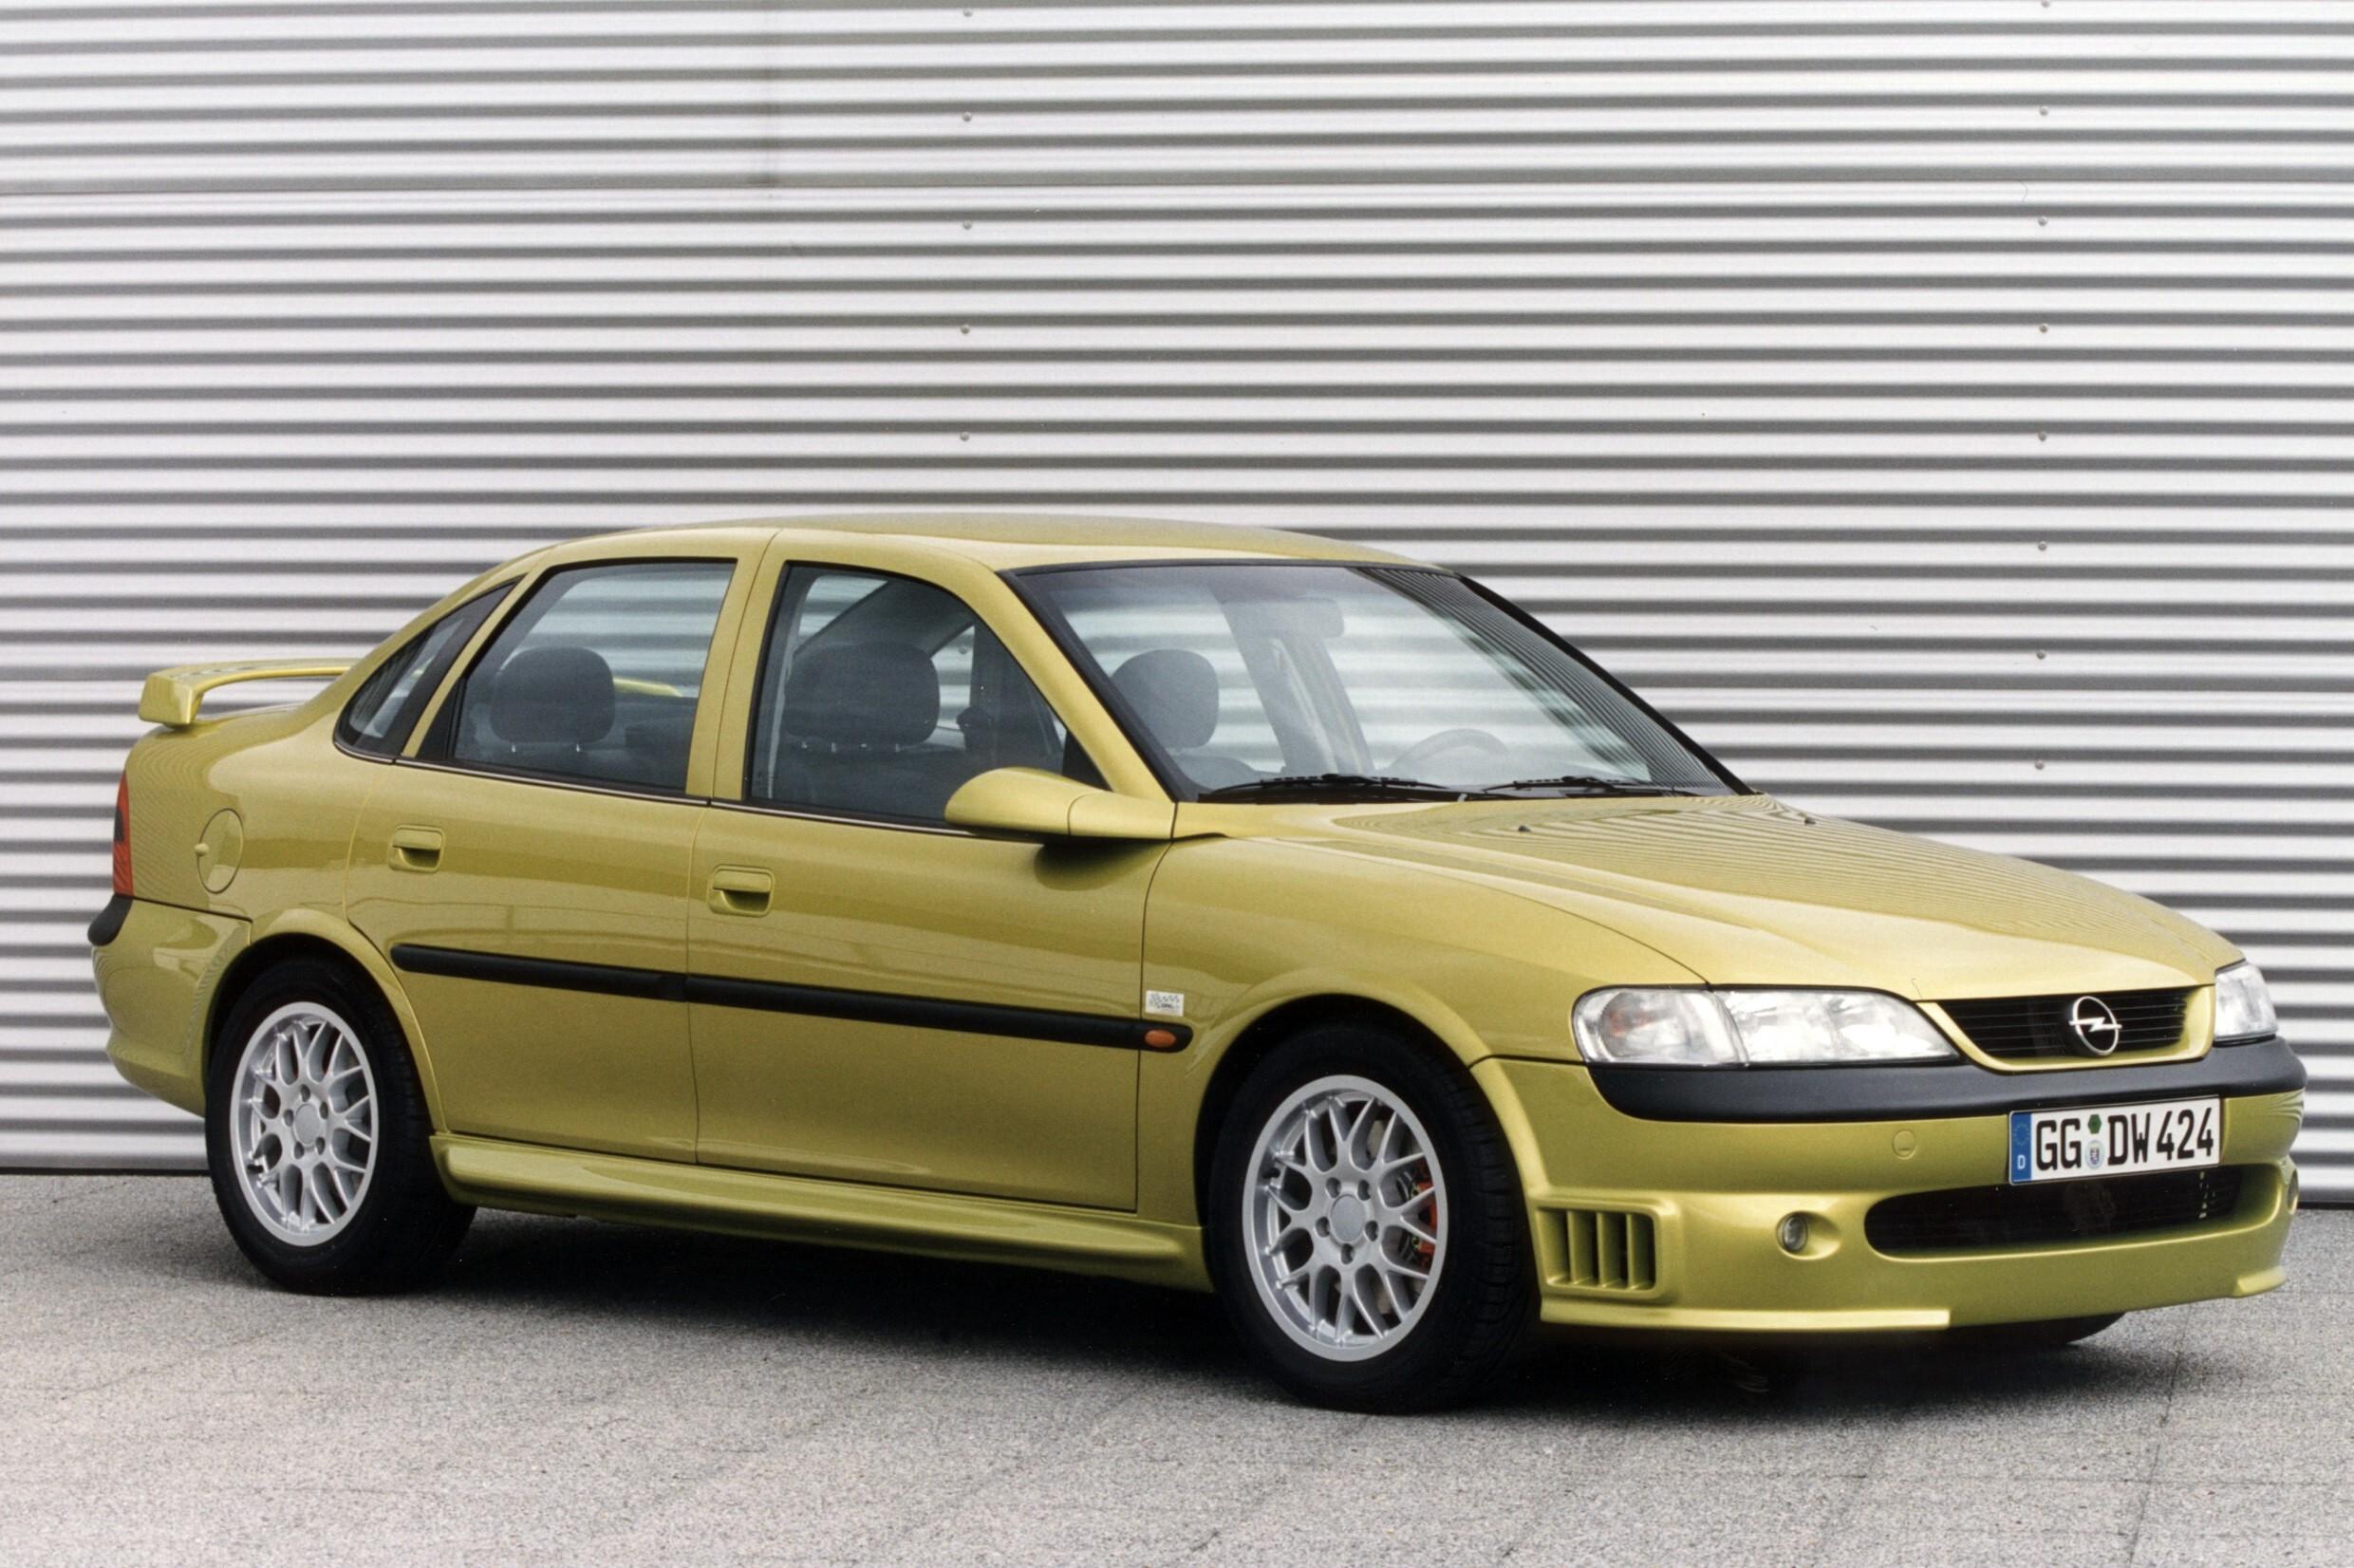 Новый опель вектра б. Opel Vectra i500. Опель Вектра б i500. Opel Vectra 1999 седан. Opel Vectra b 1995 - 2000 седан.